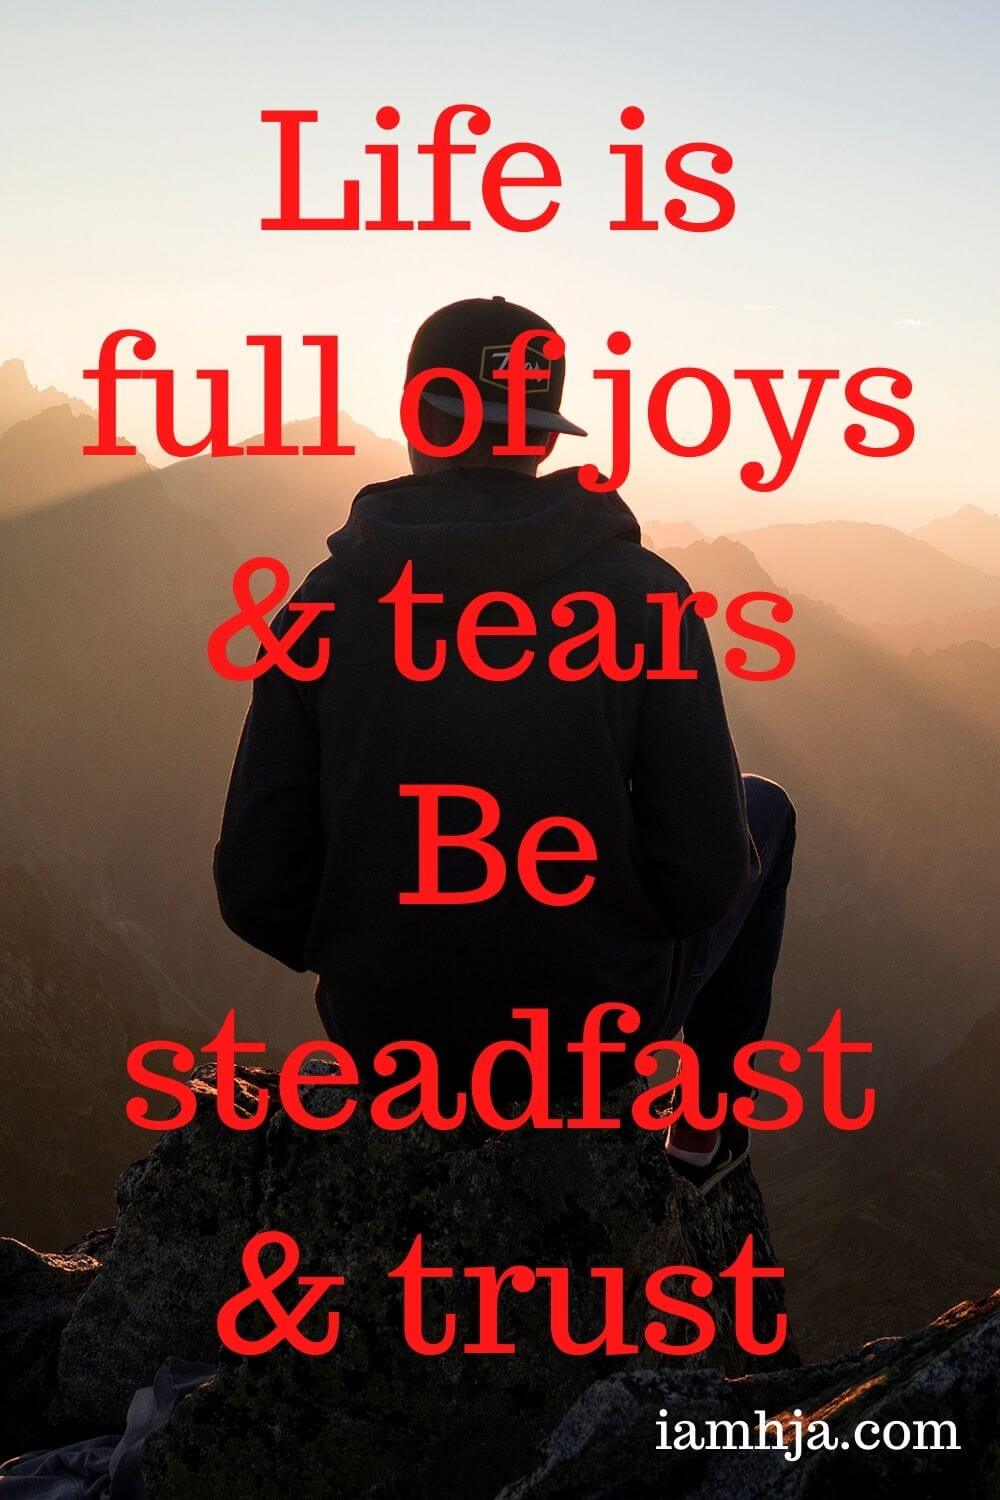 Life is full of joys & tears Be steadfast & trust